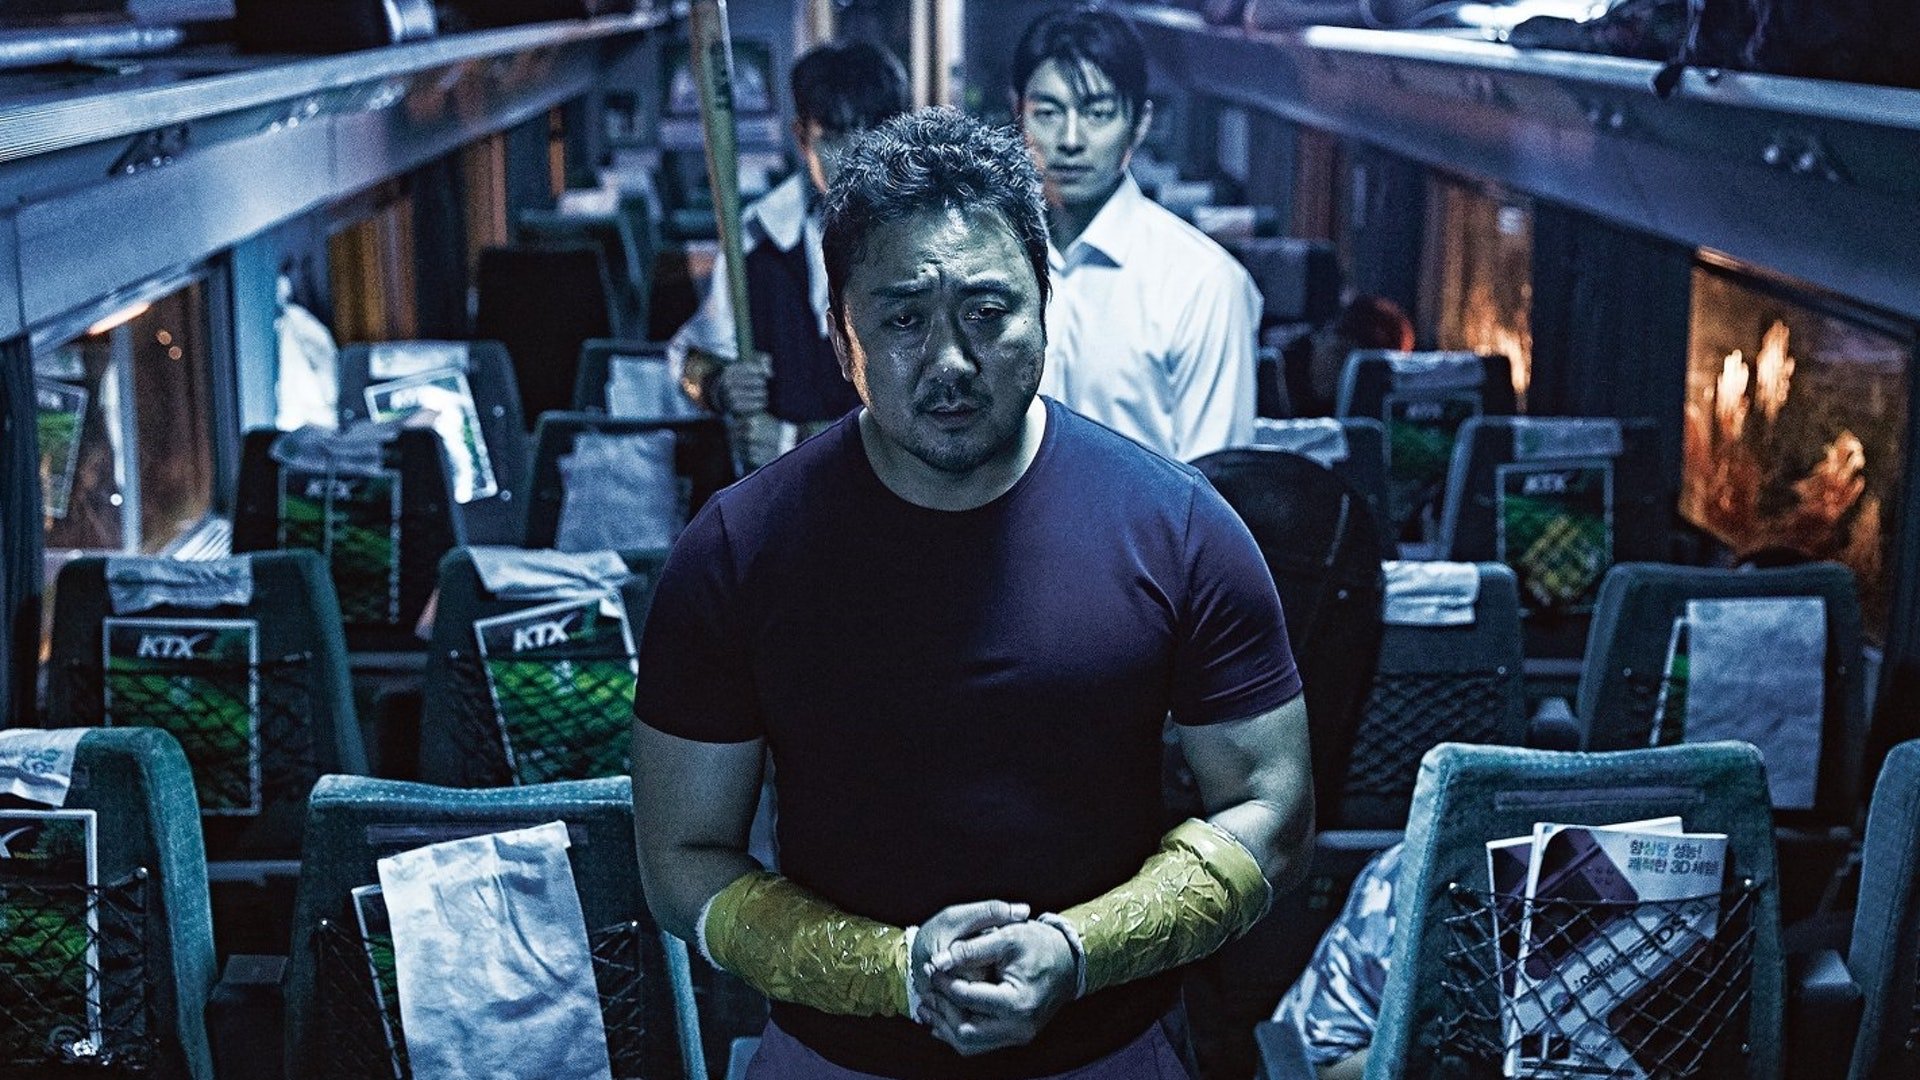 电影《尸杀列车2》明年开拍,孔刘何去何从?